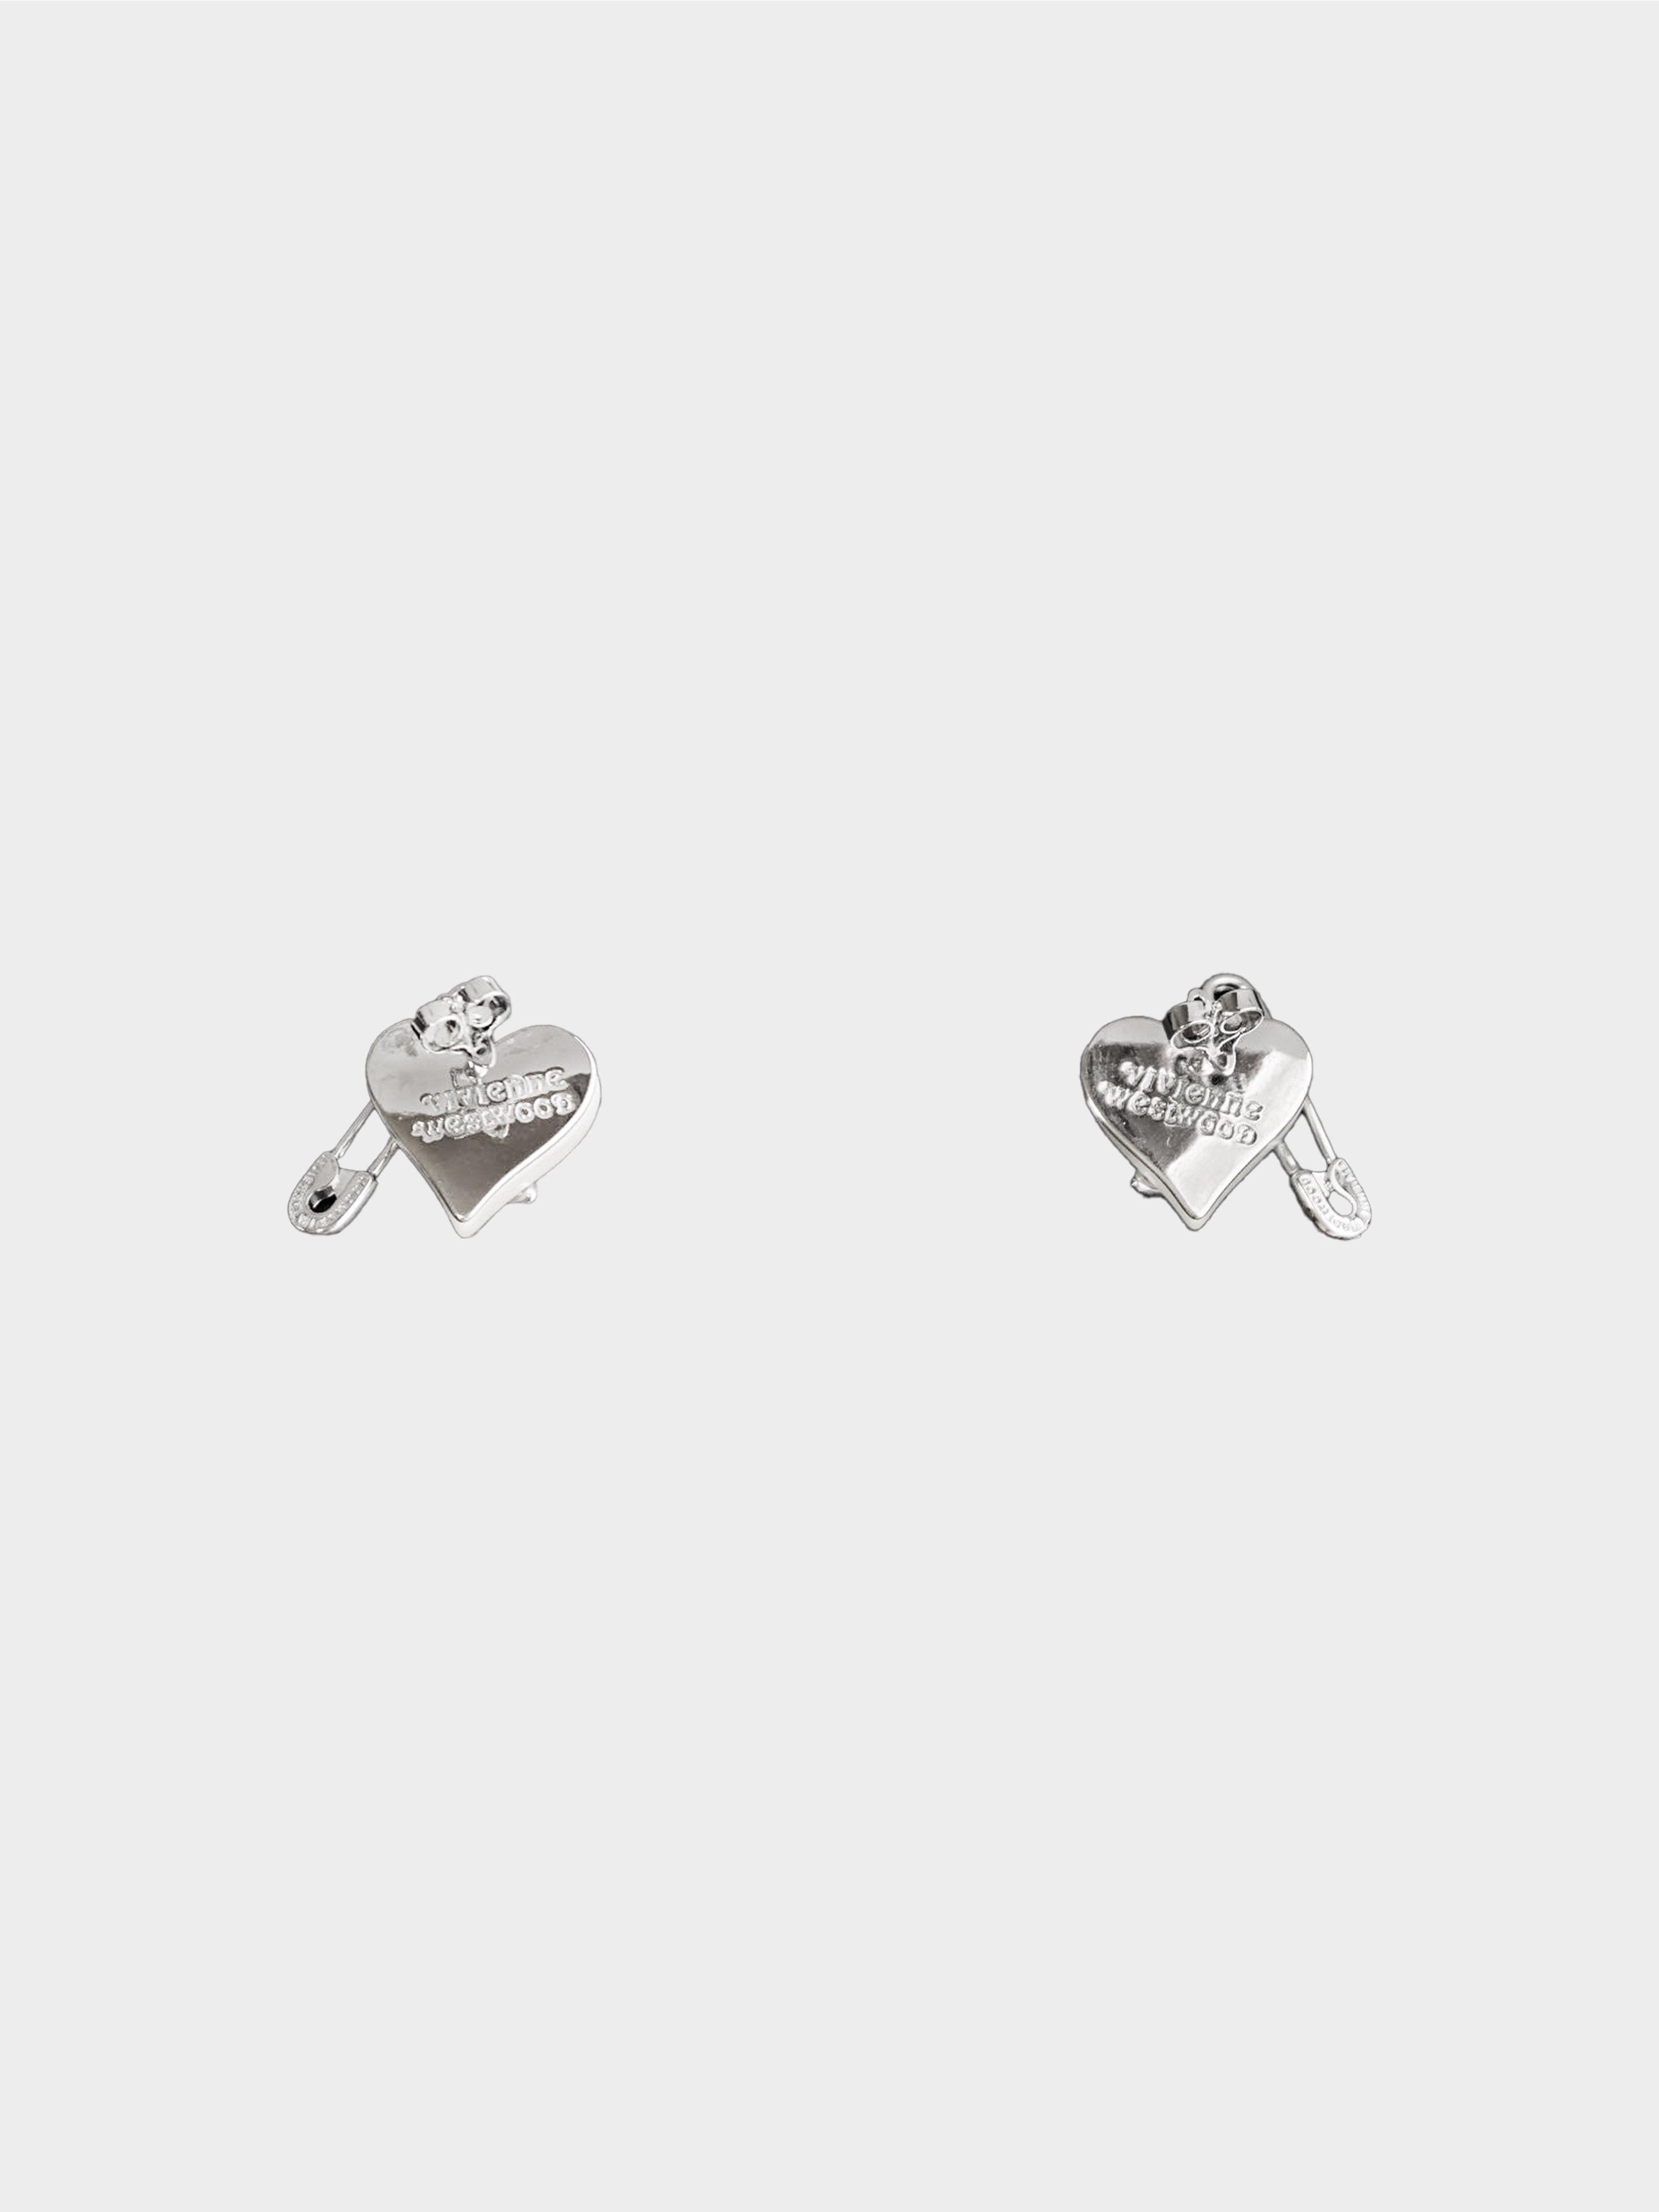 Vivienne Westwood 2010s Orietta Pearl Safety Pin Earrings